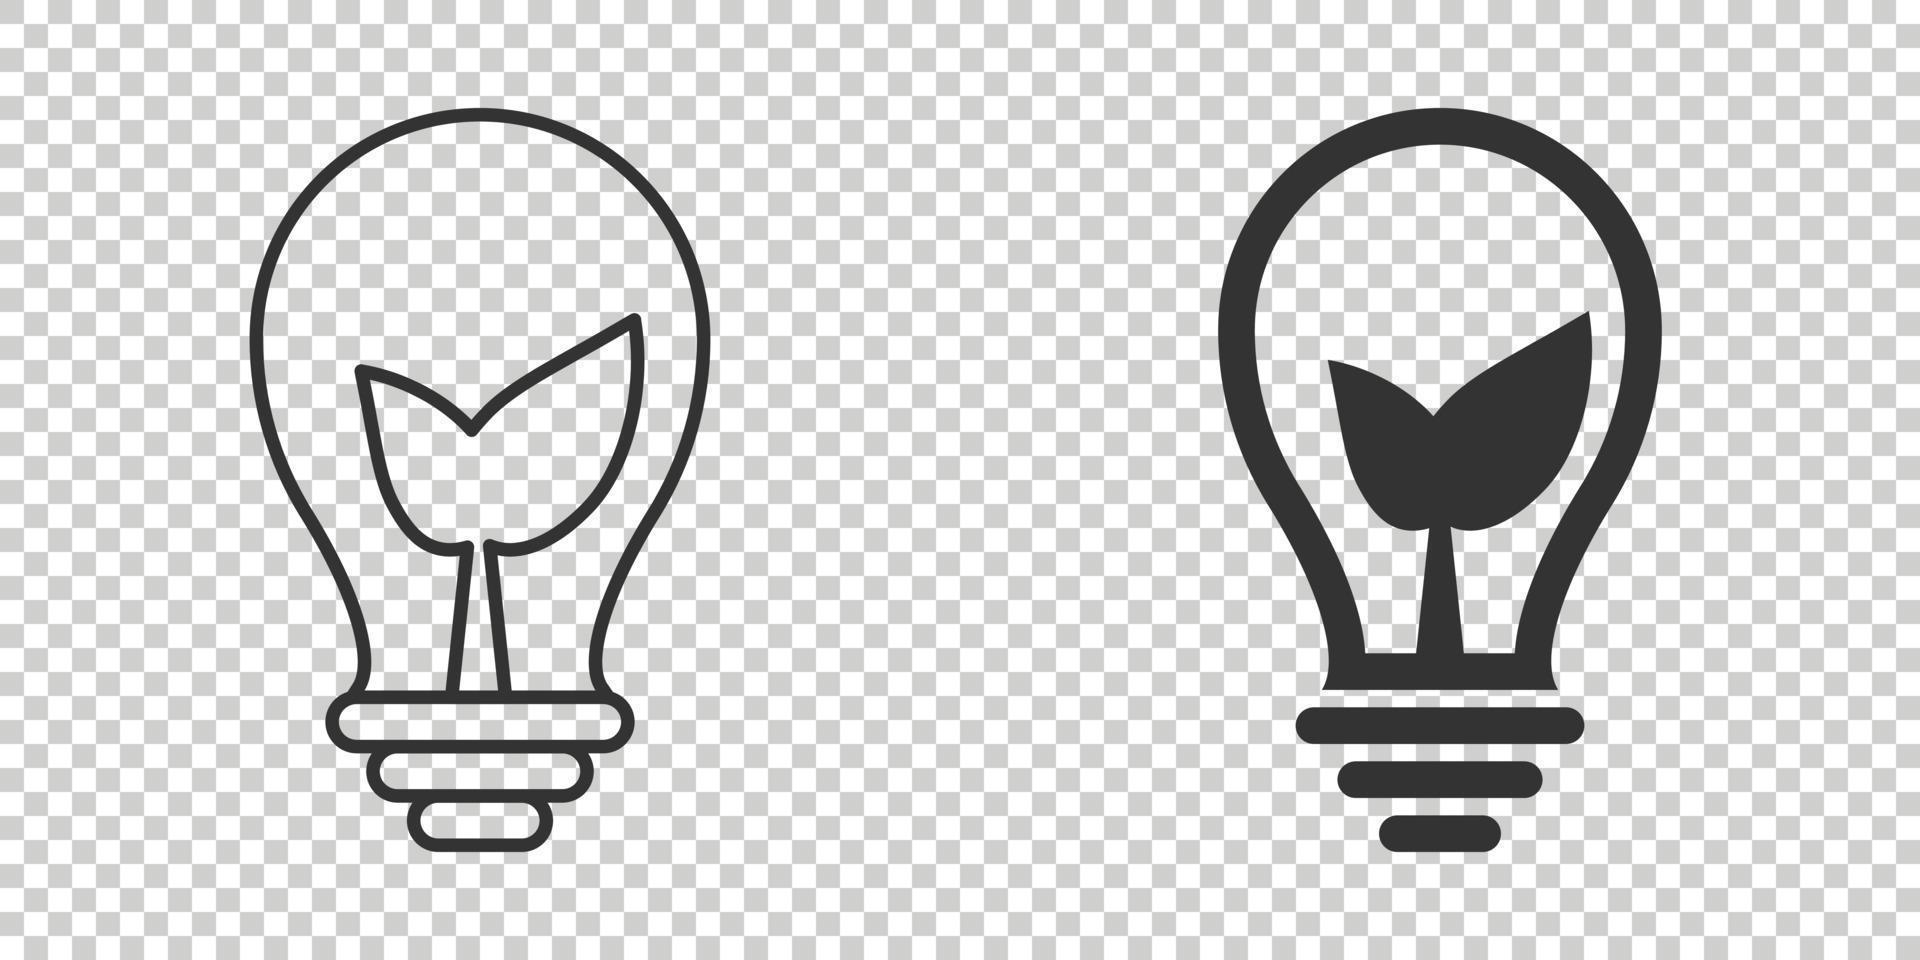 icono de bombilla en estilo plano. Ilustración de vector de bombilla sobre fondo blanco aislado. concepto de negocio de signo de lámpara de energía.